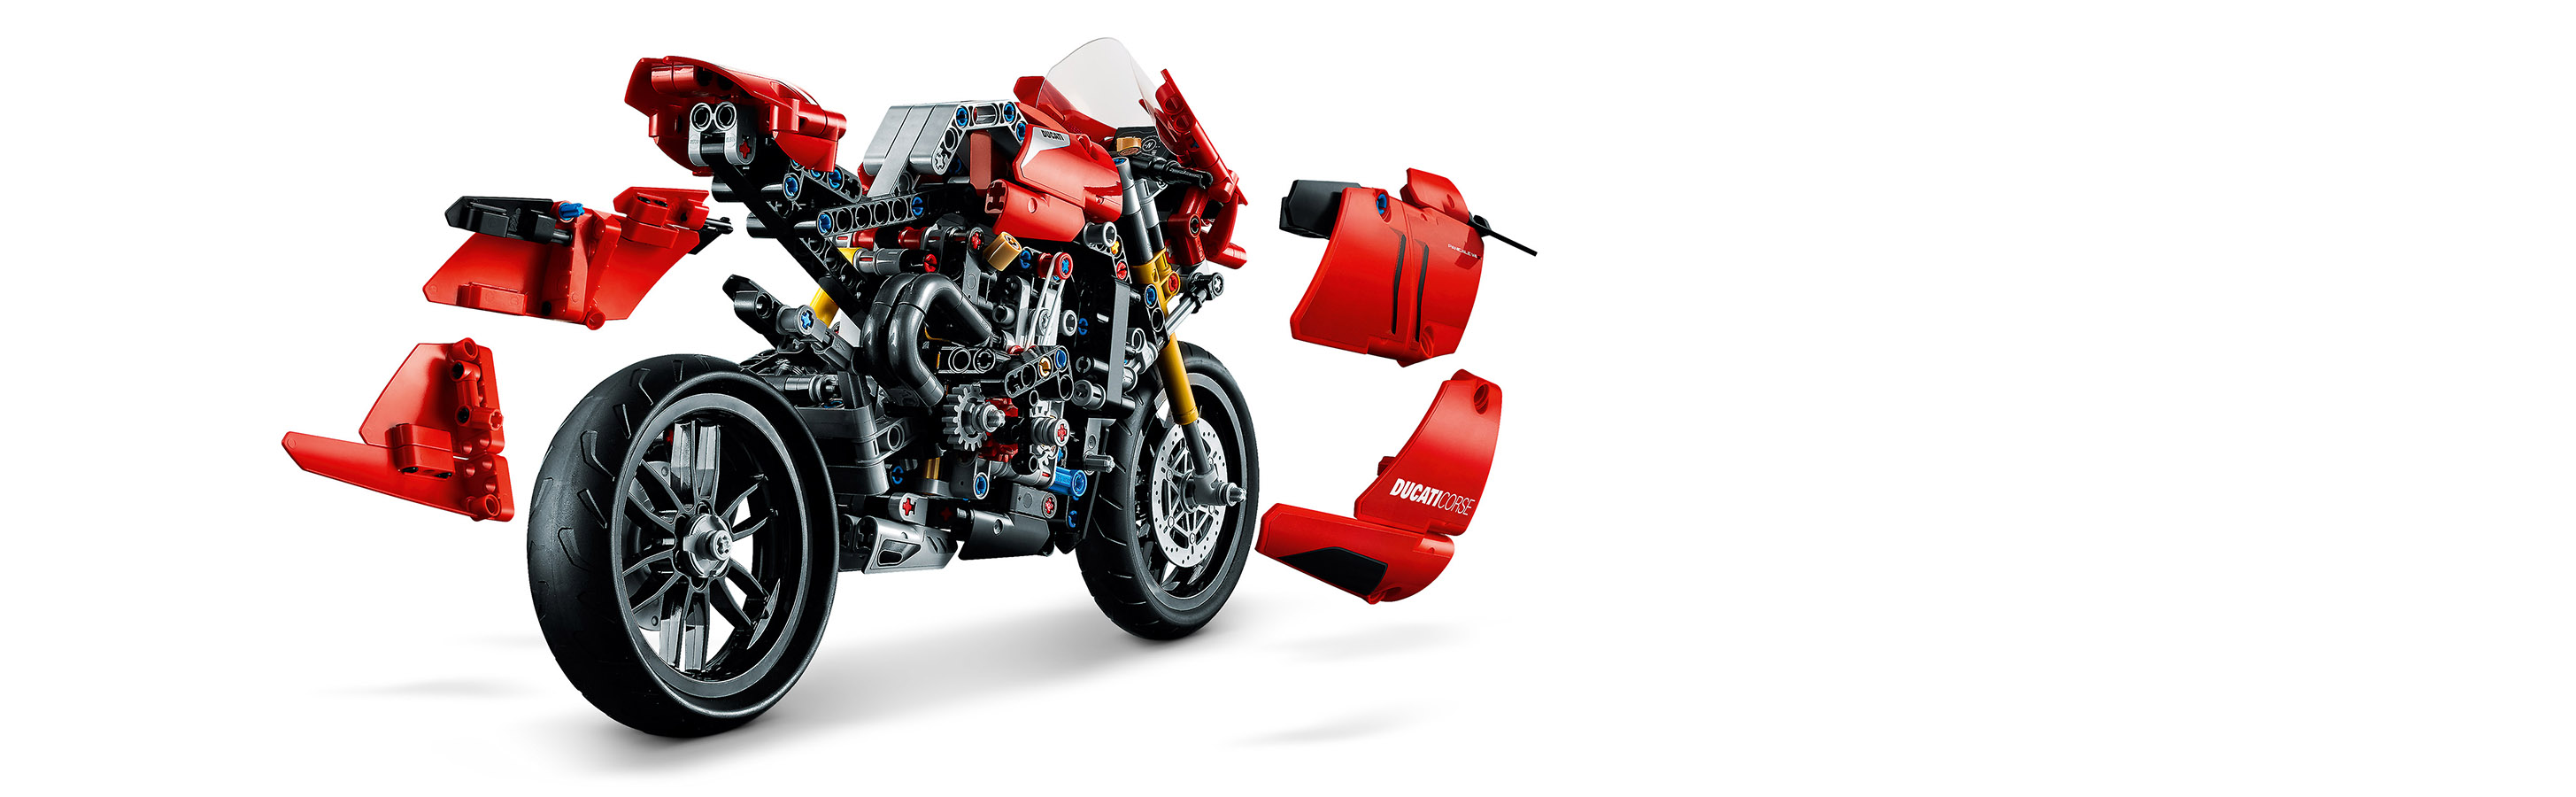 Оригинальная модель Ducati с аутентичными деталями